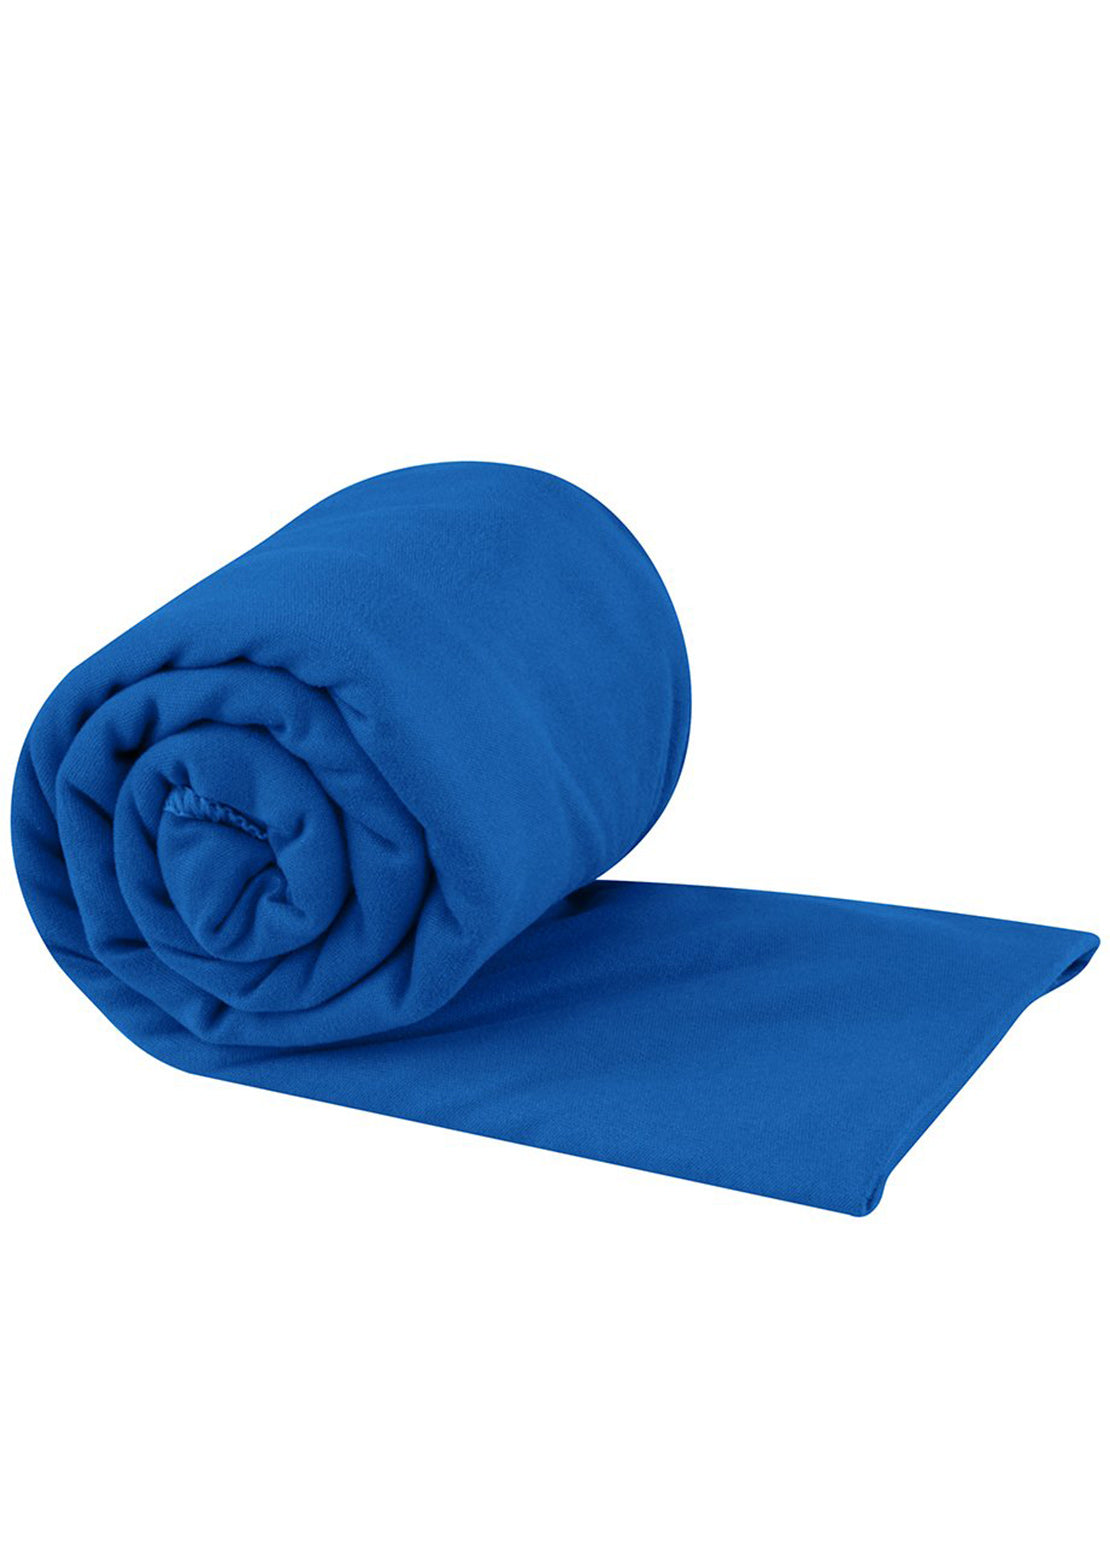 Sea To Summit Pocket Towel - Large Cobalt Blue